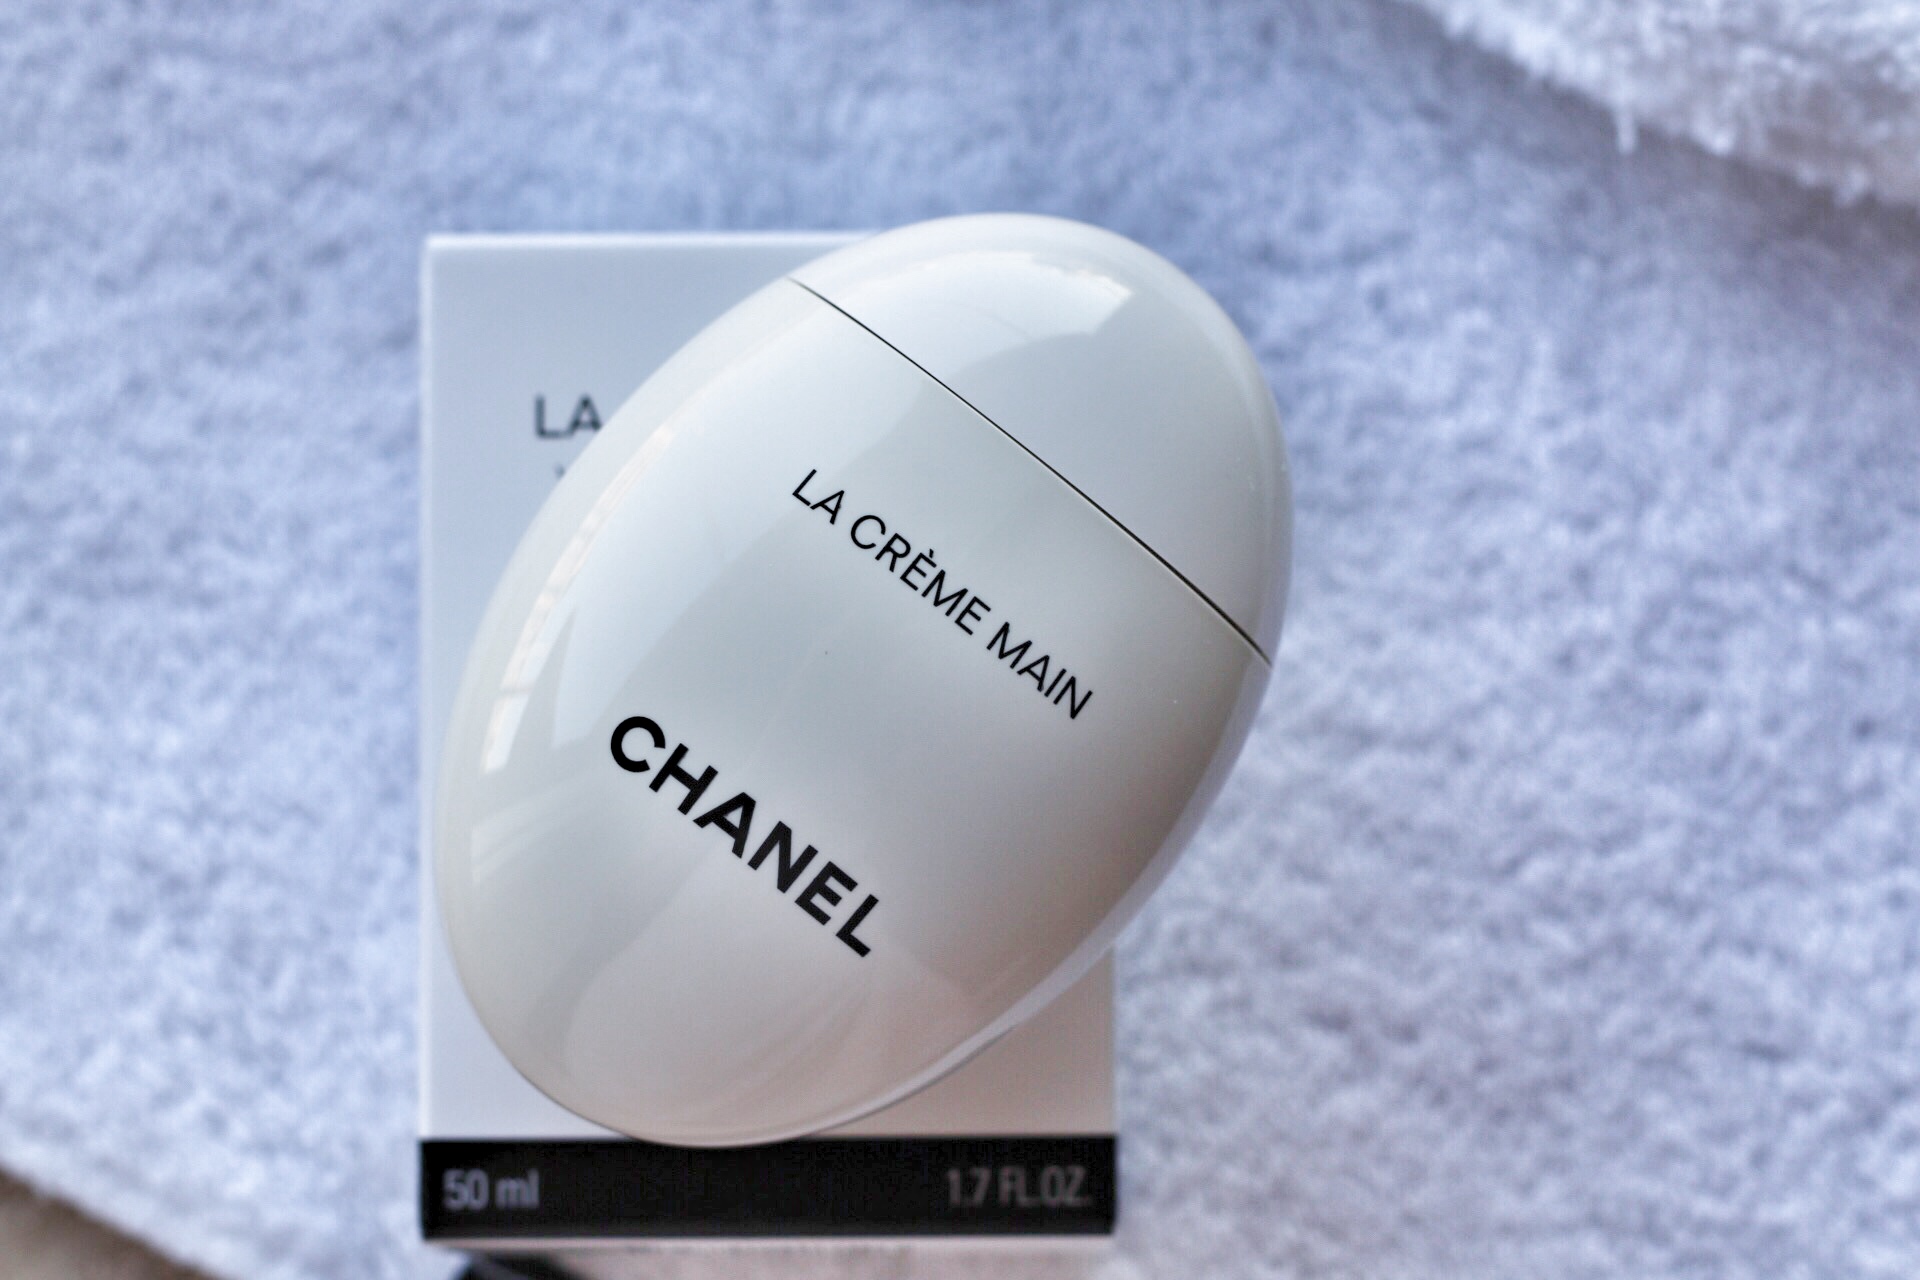 Chanel il video in anteprima della nuova La Crème Main  News  Allureit   il portale del settore profumeria